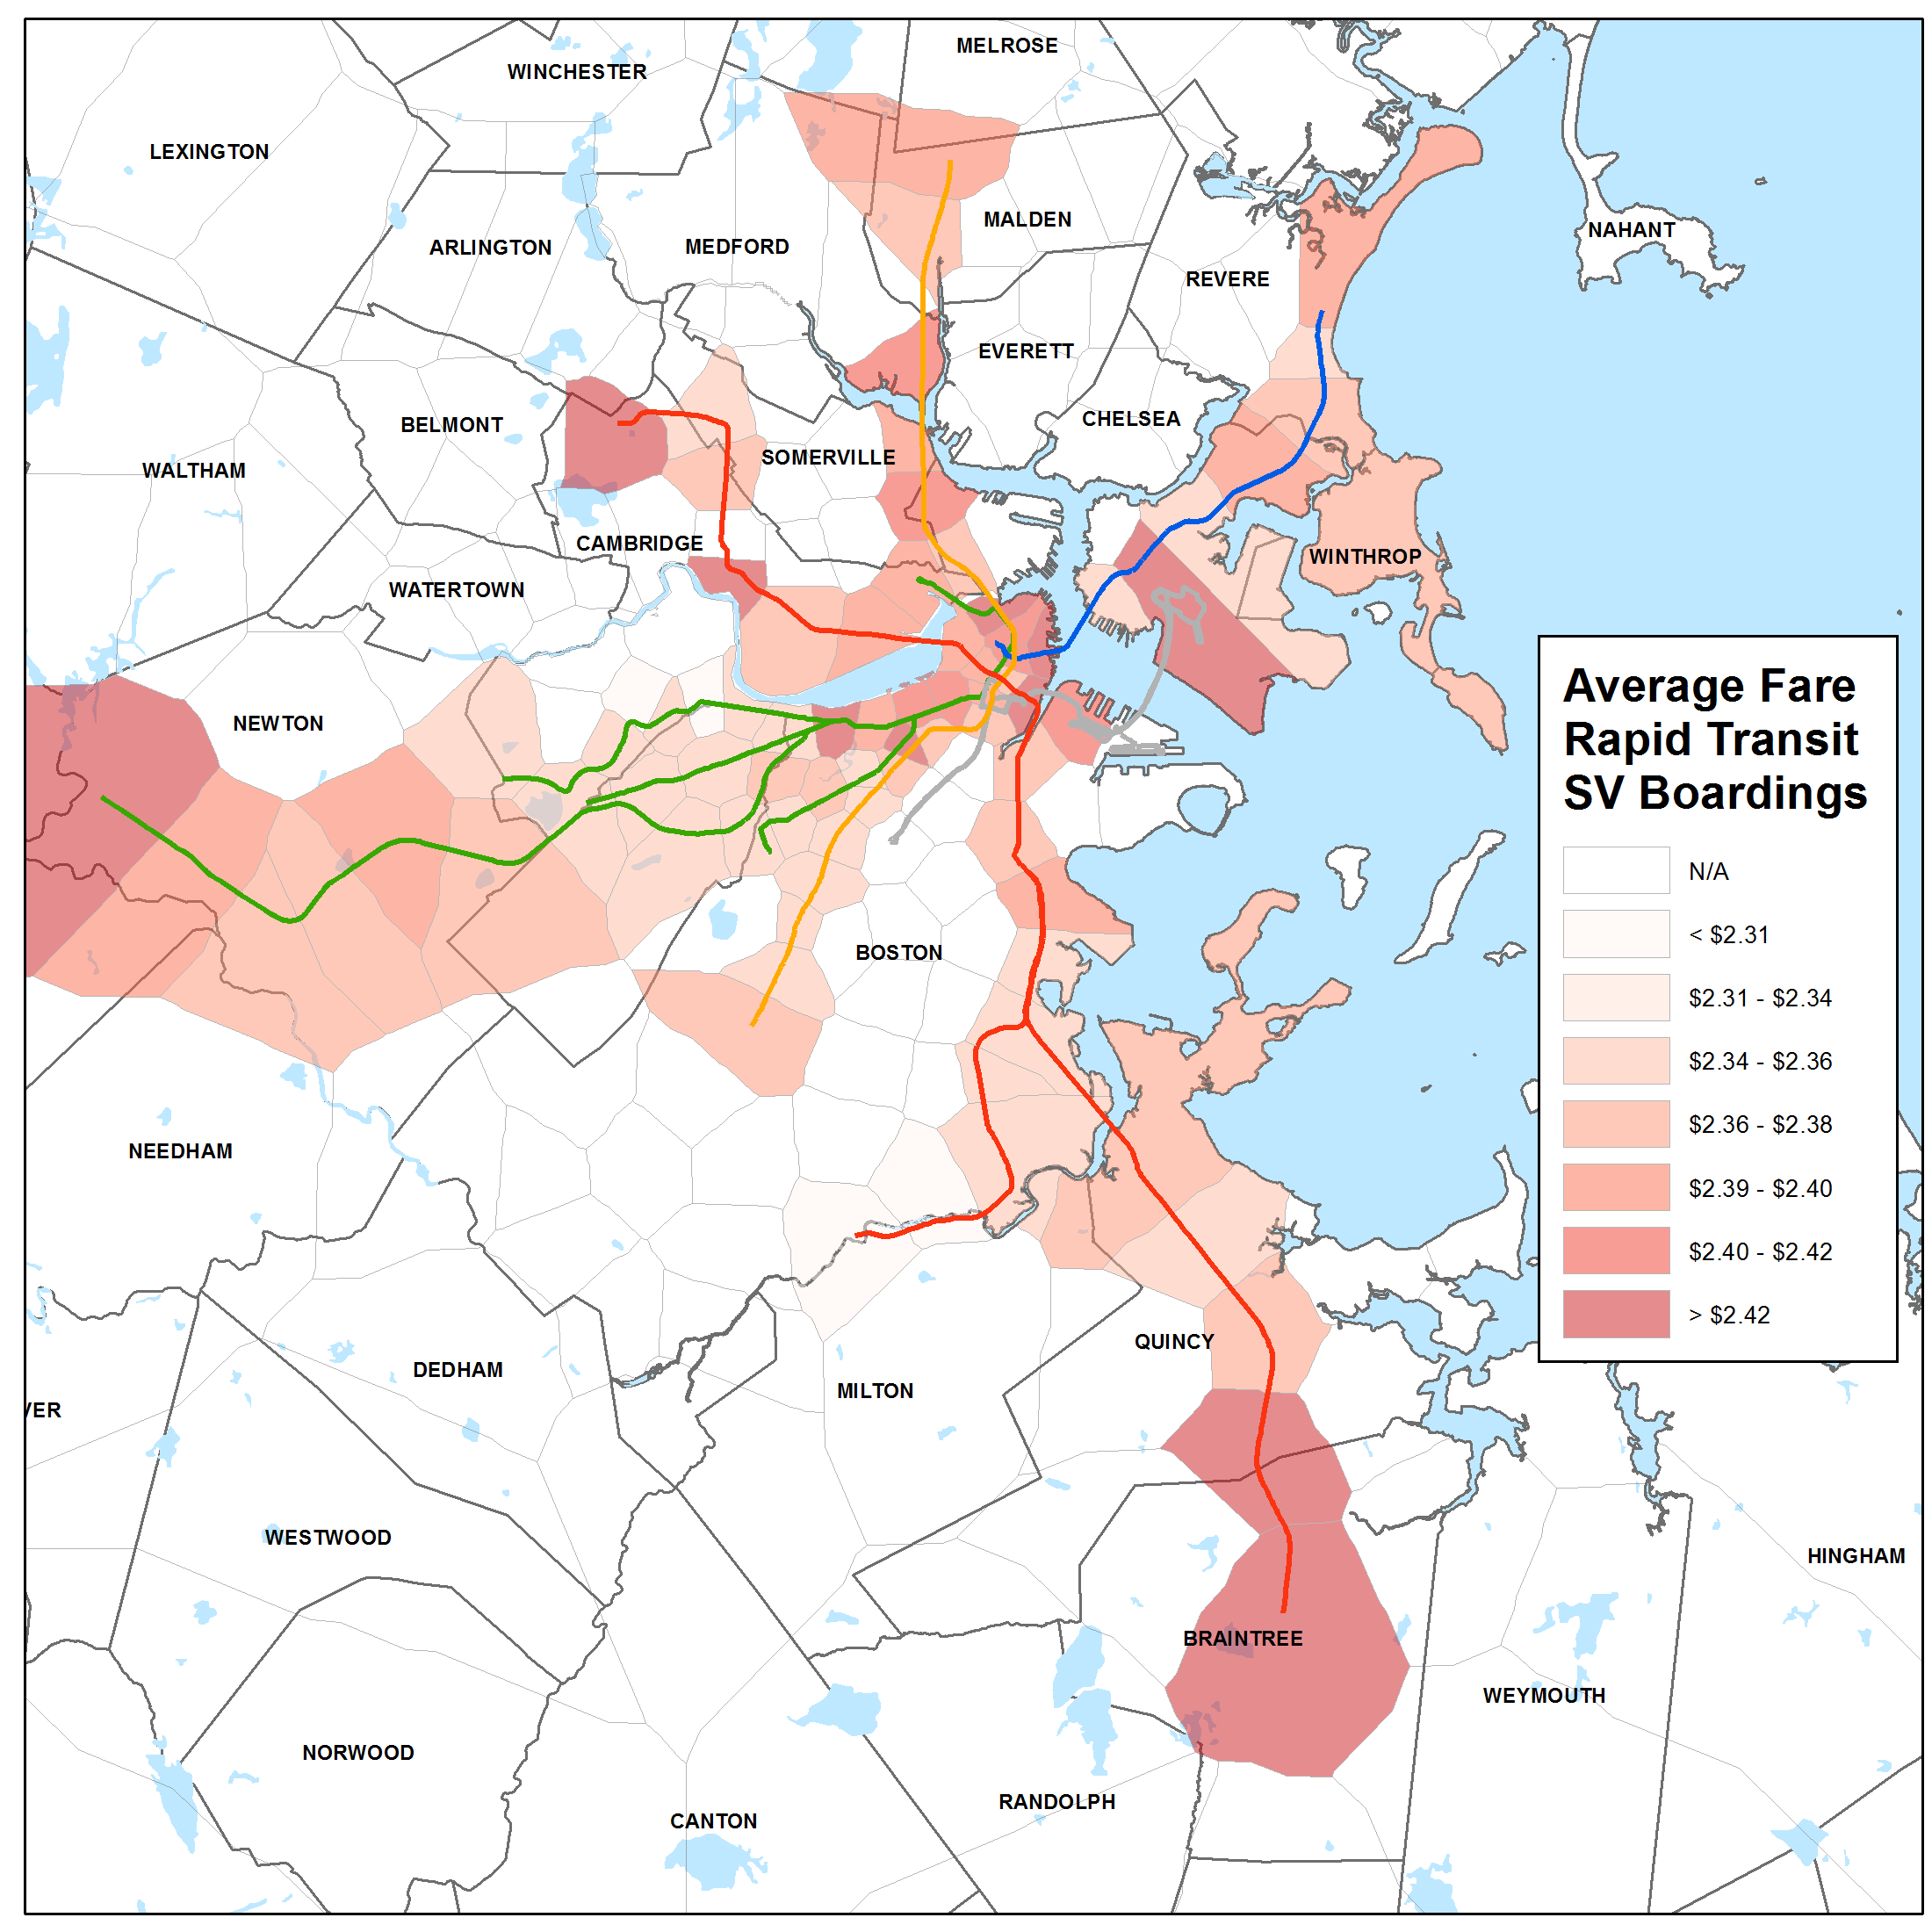 Average Fare on Rapid Transit Boardings